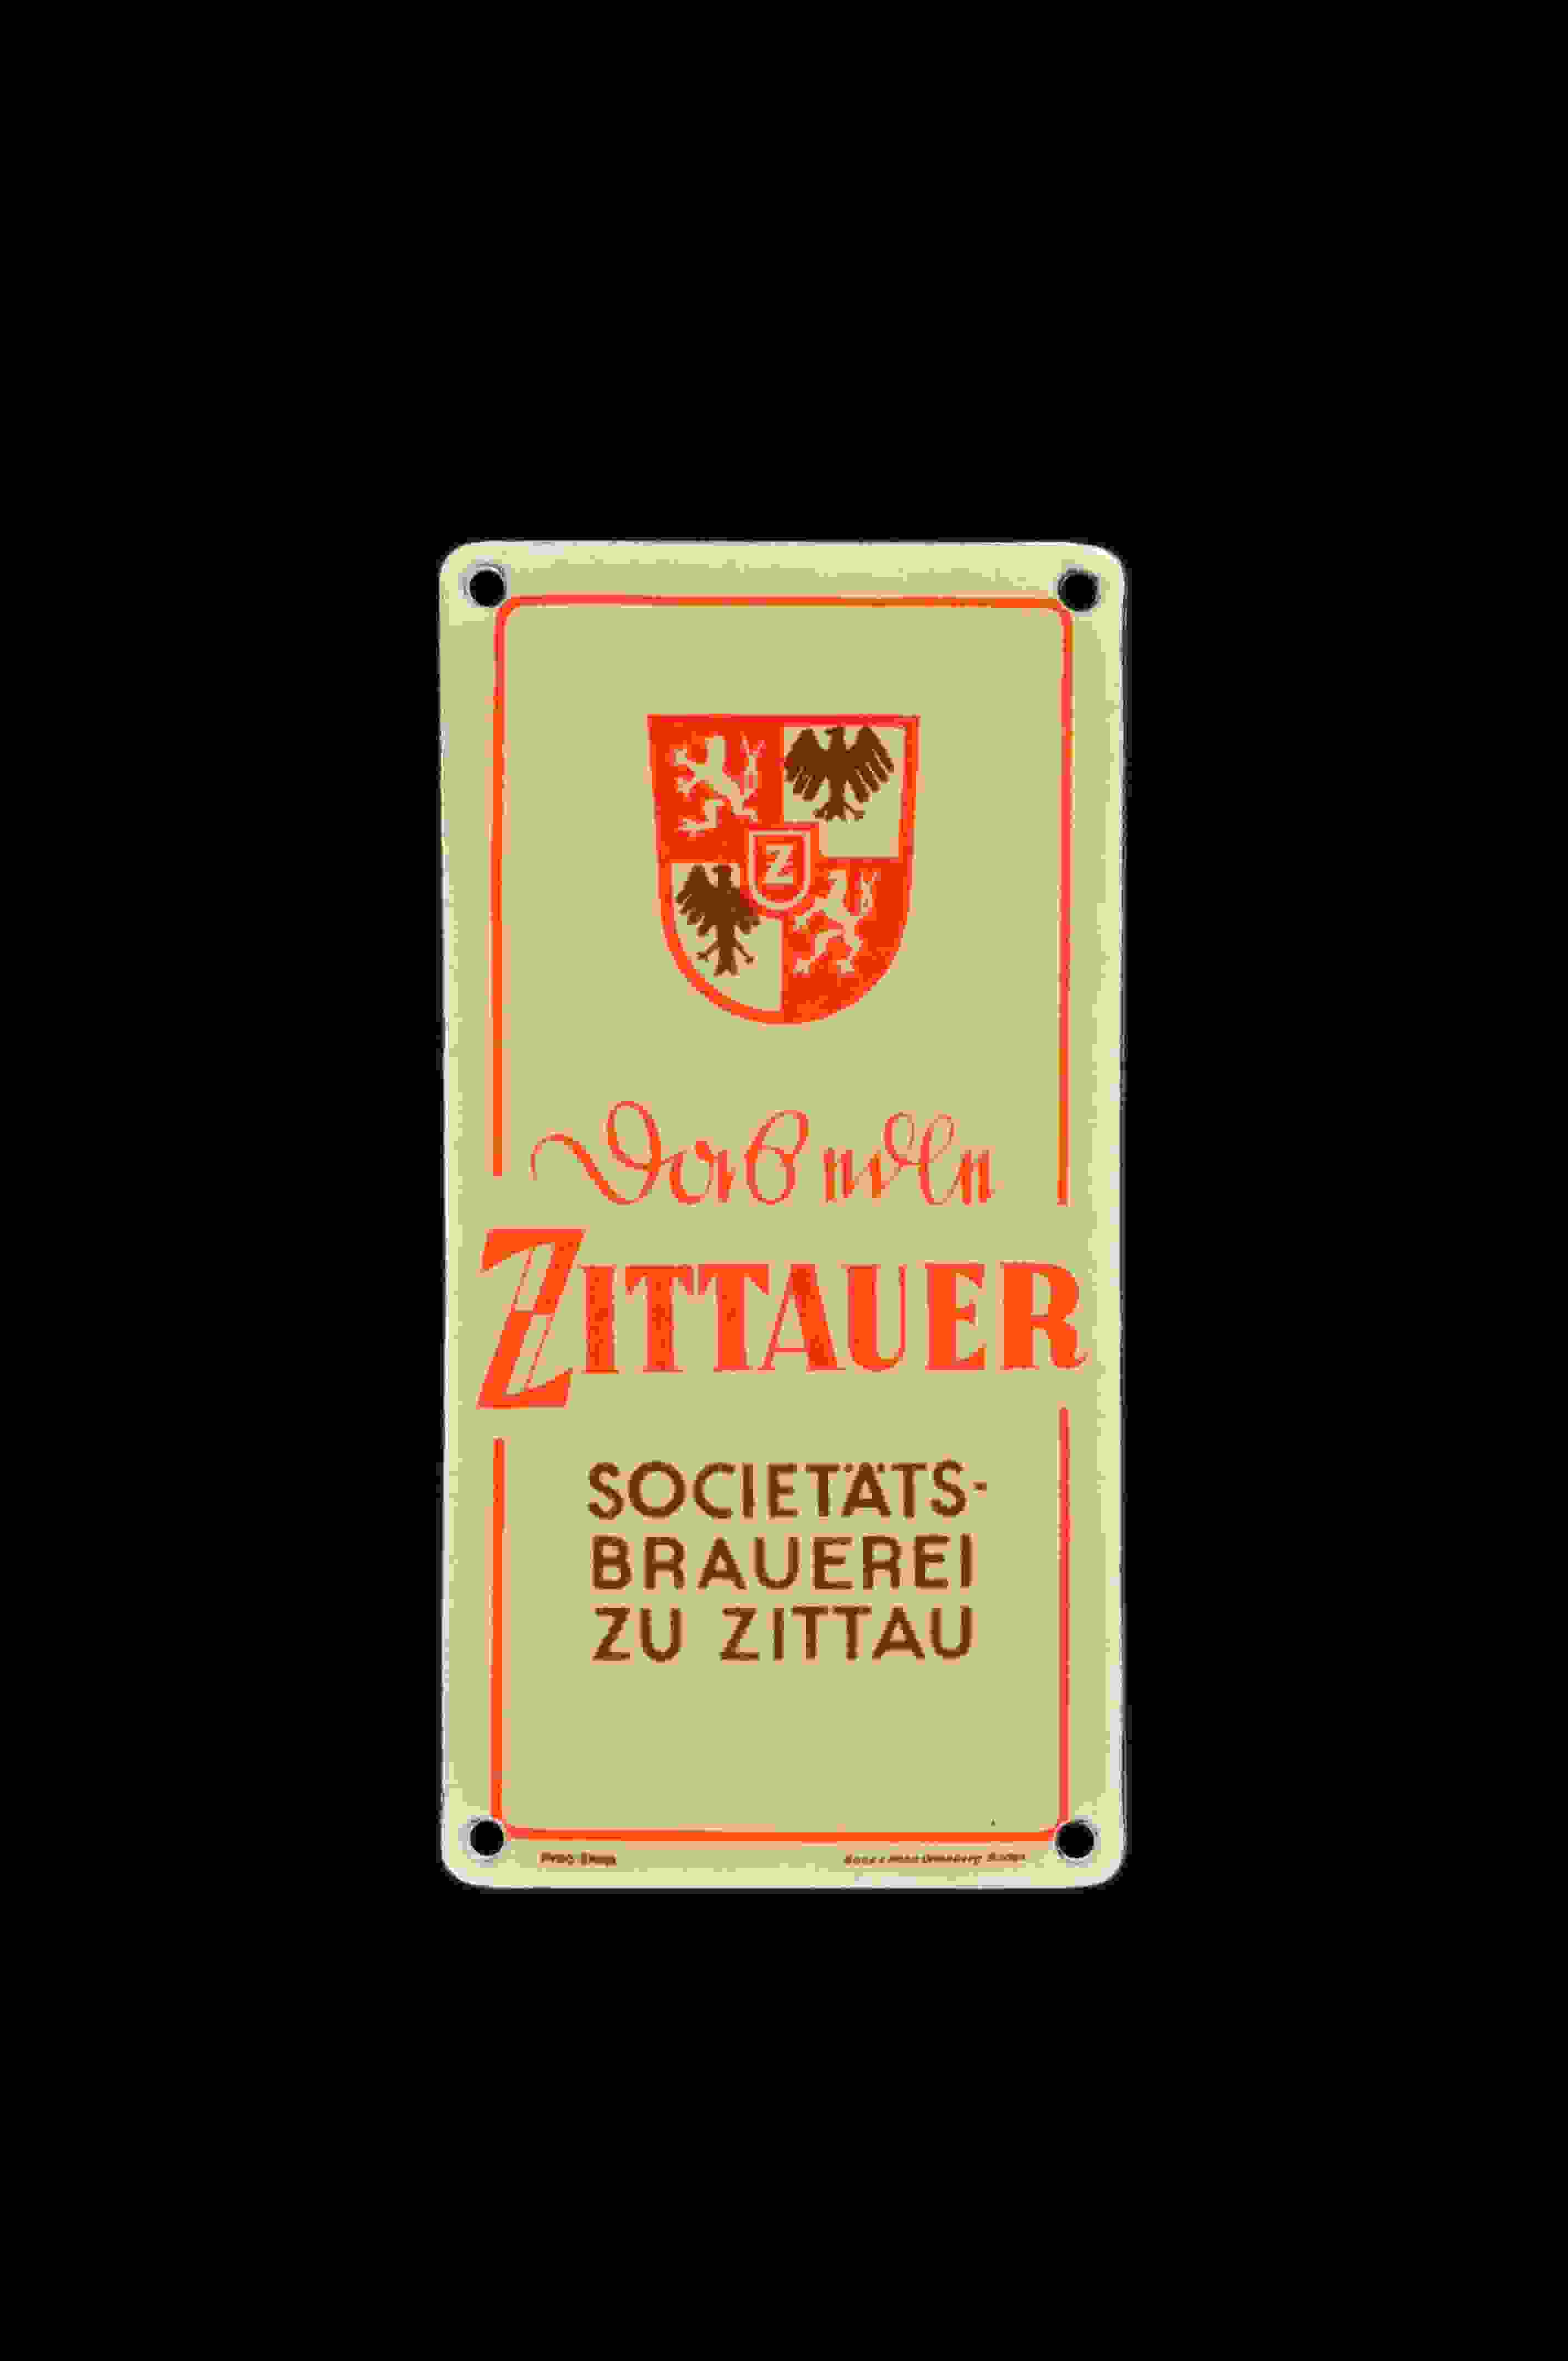 Zittauer 